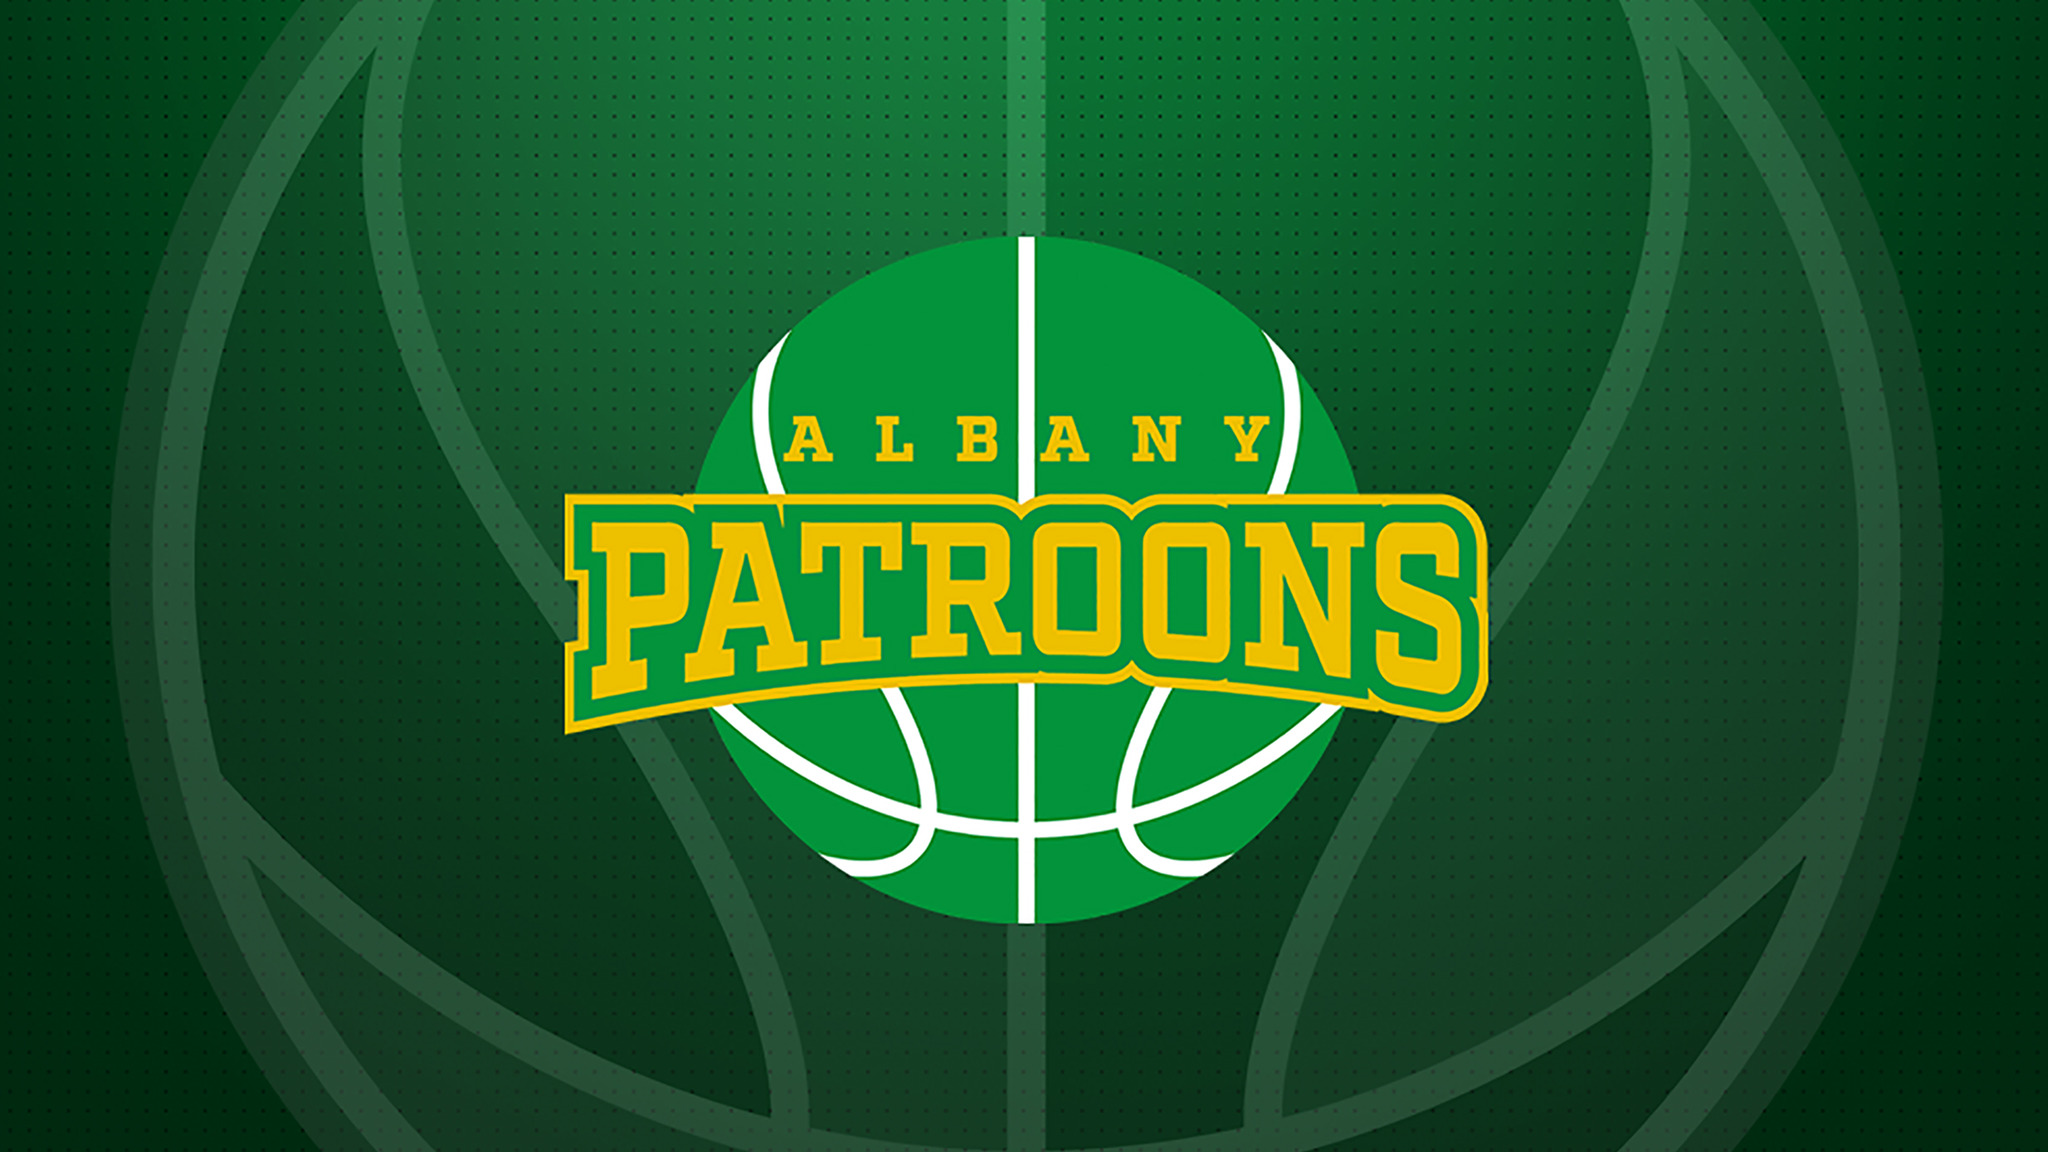 Albany Patroons Season Ticket